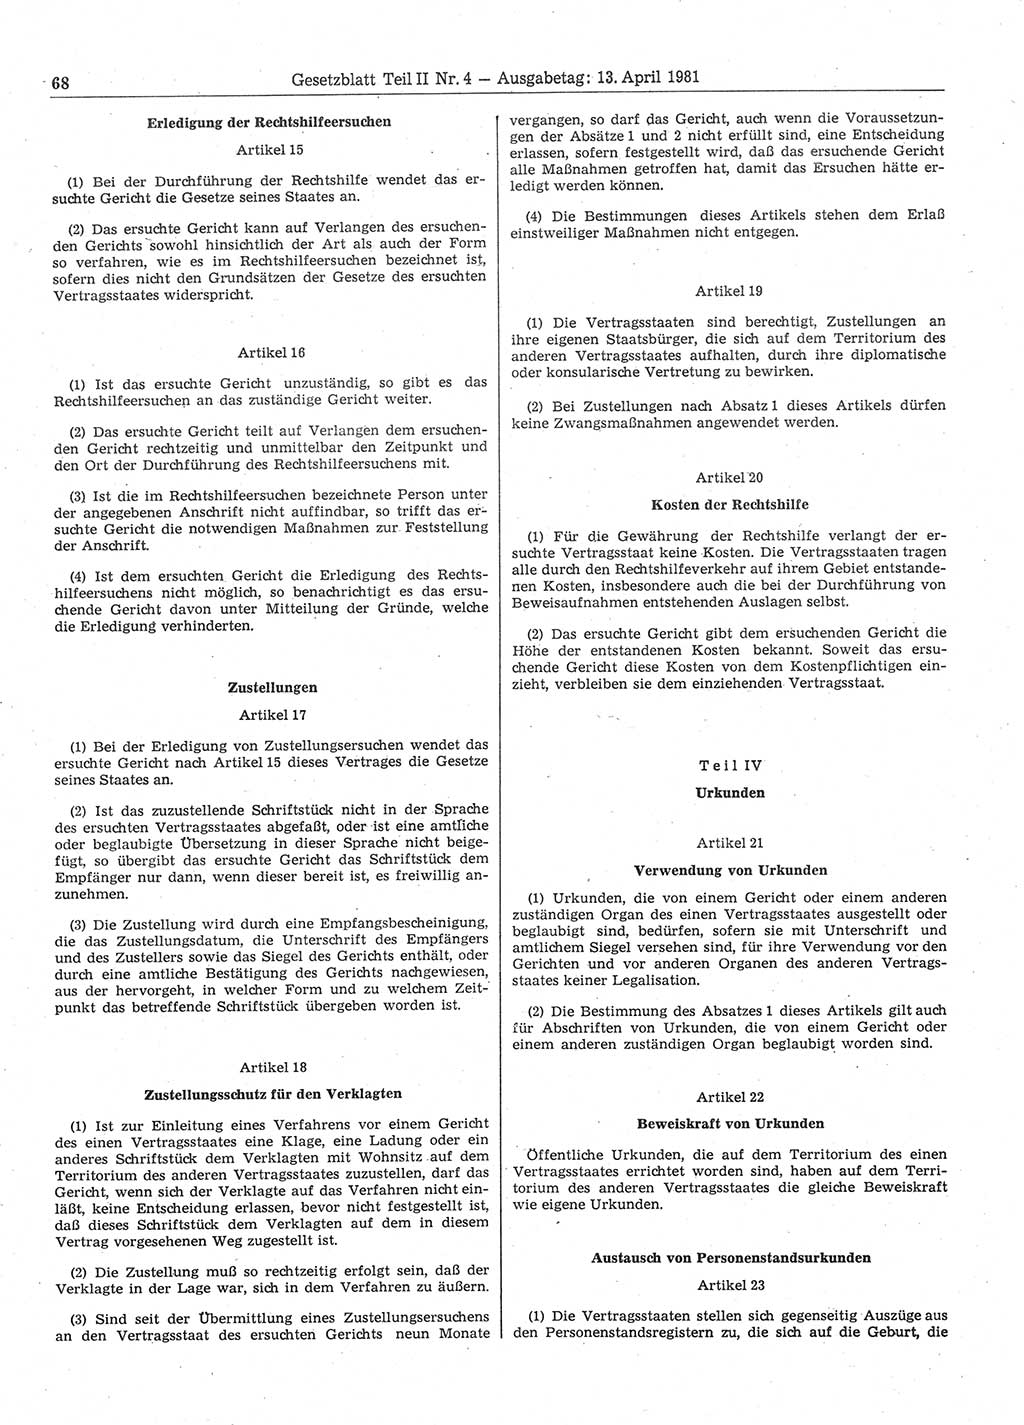 Gesetzblatt (GBl.) der Deutschen Demokratischen Republik (DDR) Teil ⅠⅠ 1981, Seite 68 (GBl. DDR ⅠⅠ 1981, S. 68)